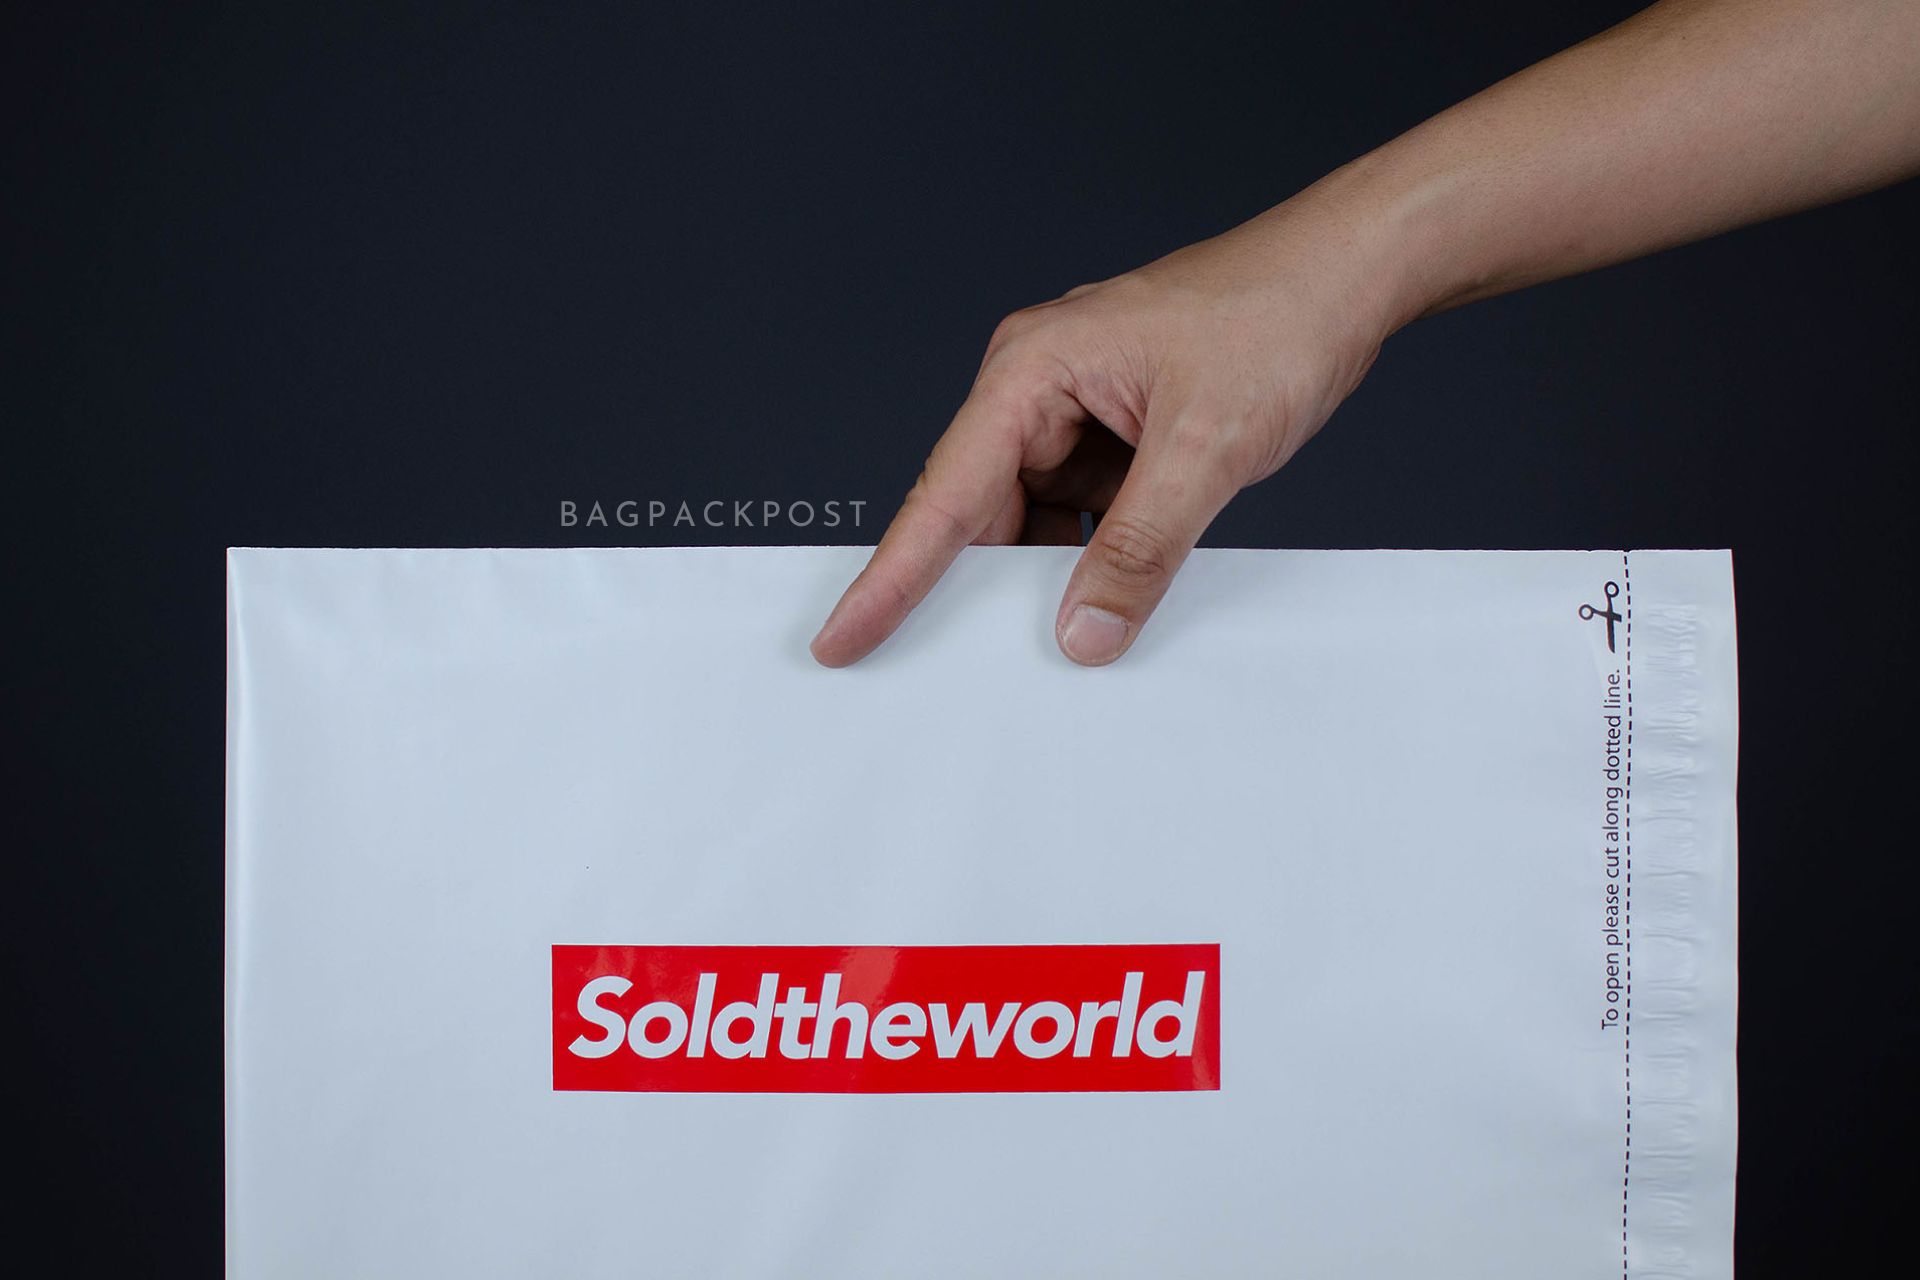 ผลิตถุงไปรษณีย์ ซองไปรษณีย์พิมพ์ลาย SoldTheWorldStore ซองไปรษณีย์สีขาว ถุงไปรษณีย์พิมพ์ลาย 4 BagPackPost